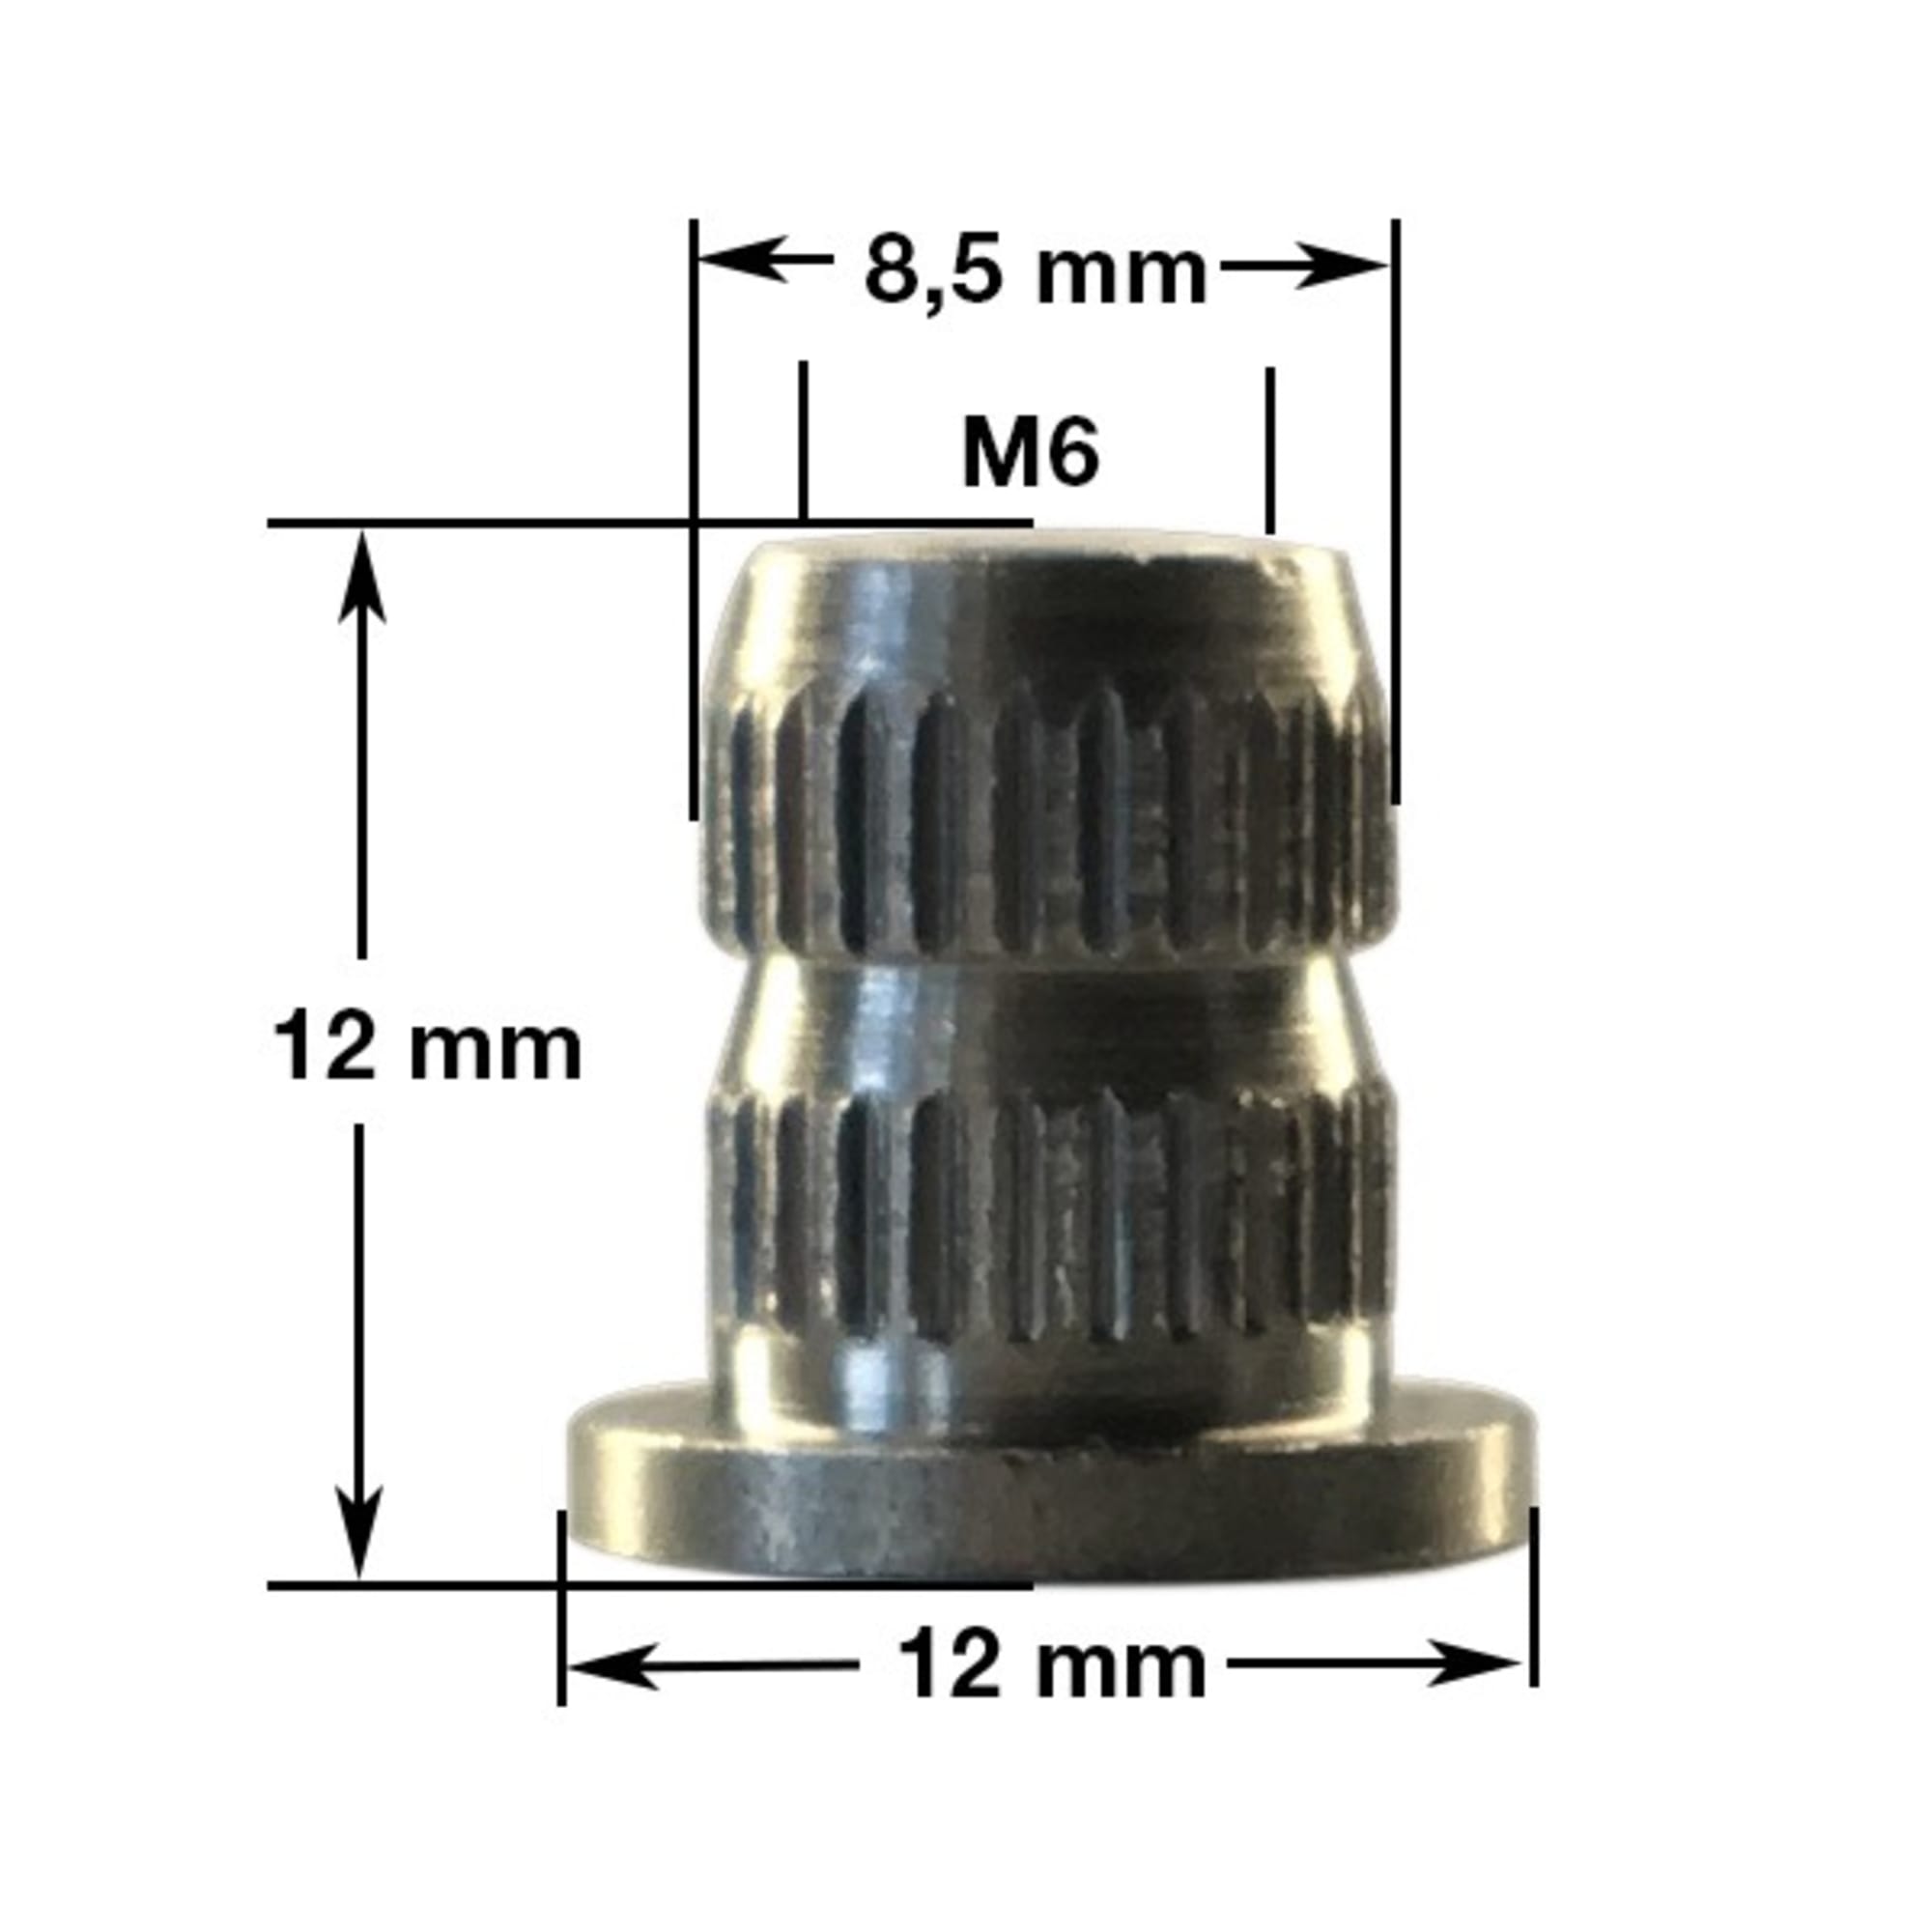 Fix-A-Form Union (12 x 12 mm / M6), galvanized, image 5